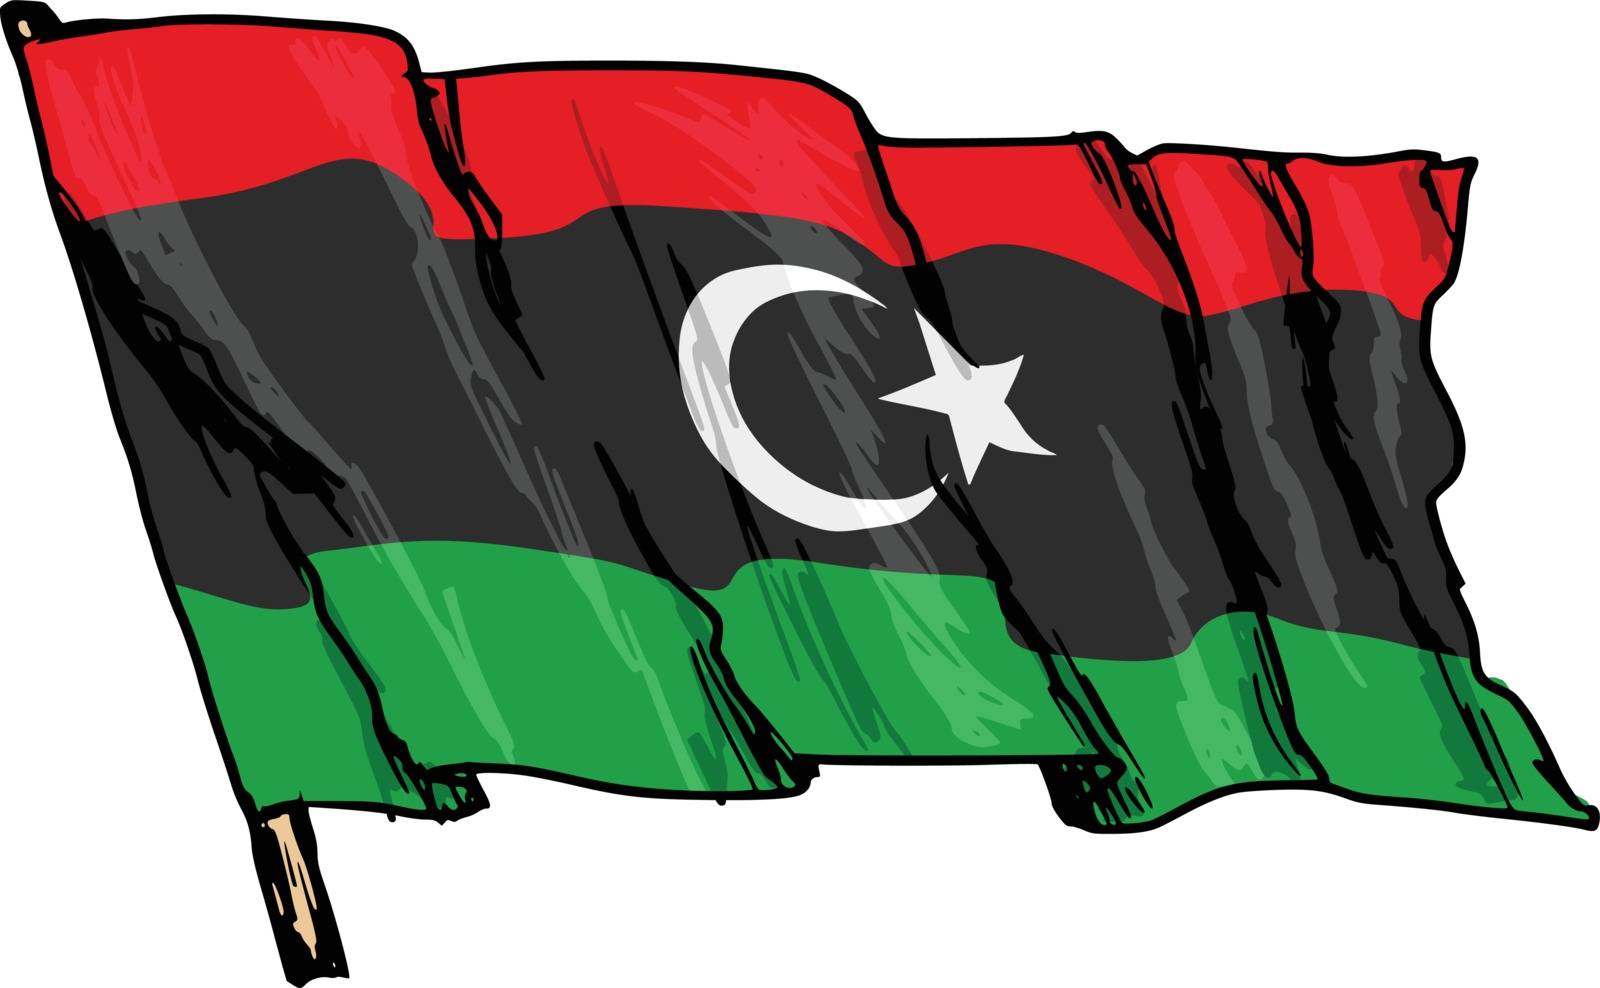 flag of Libya by Perysty